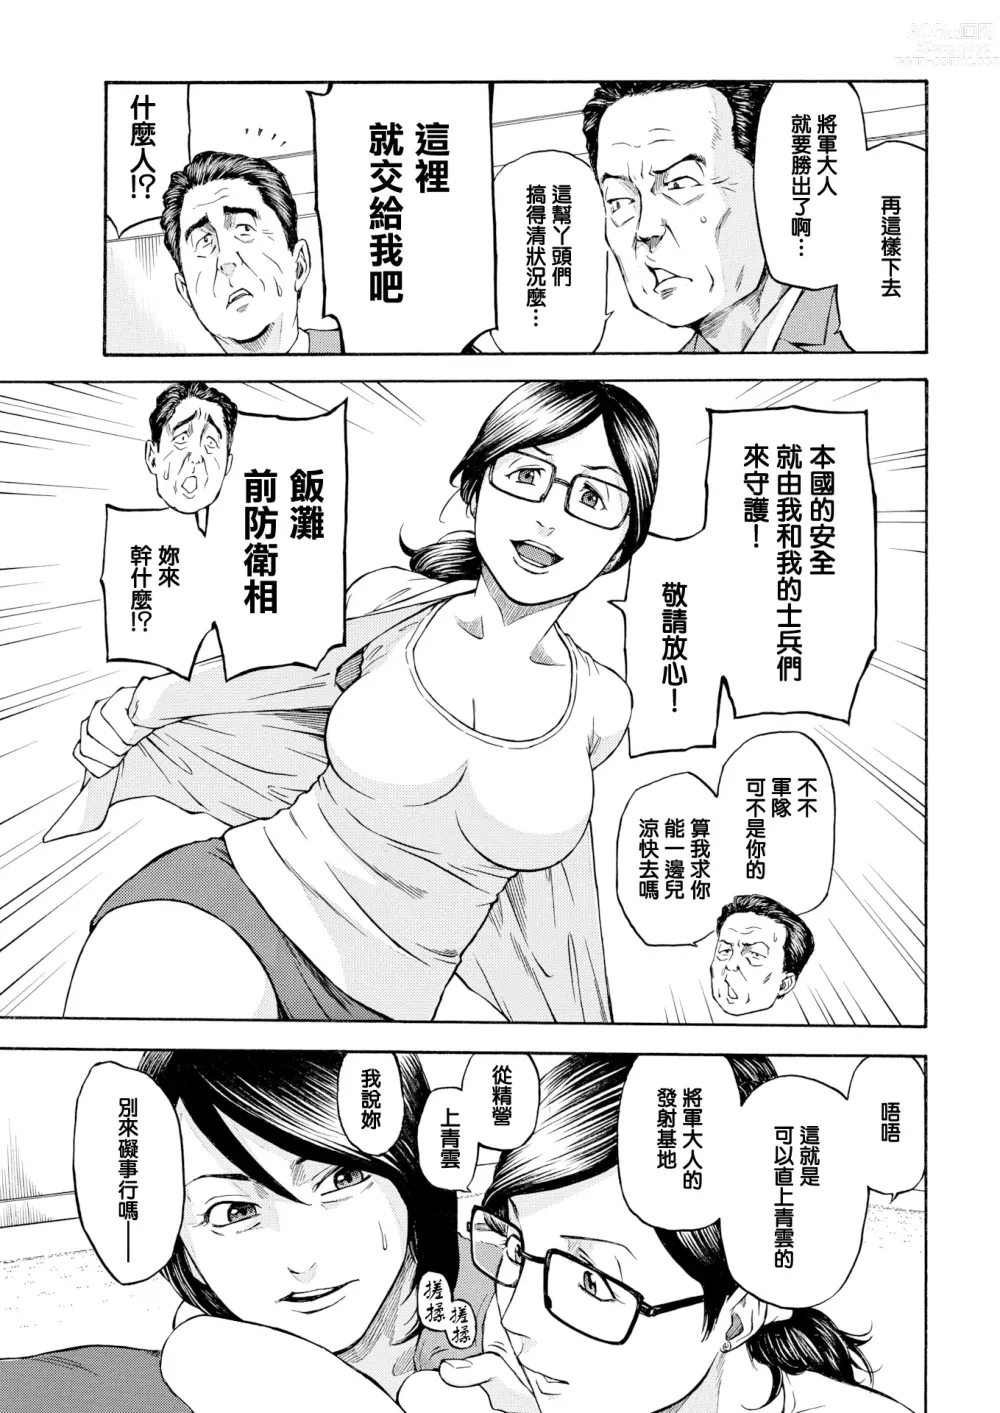 Page 6 of manga Daiikkai Chikichiki Hassha Gaman Taikai